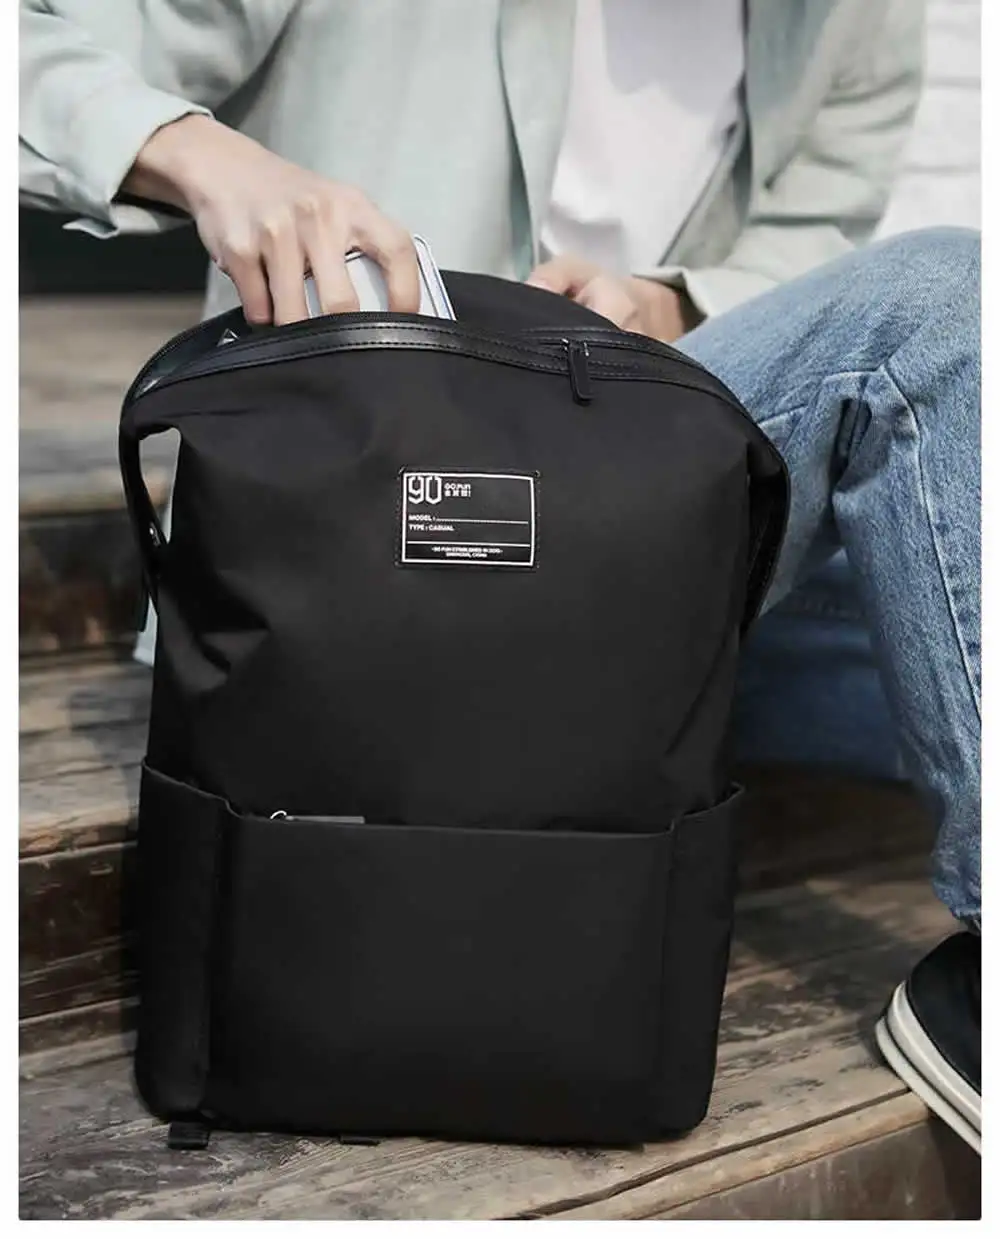 Xiaomi 90FUN Lecturer Fashion School Bag 9